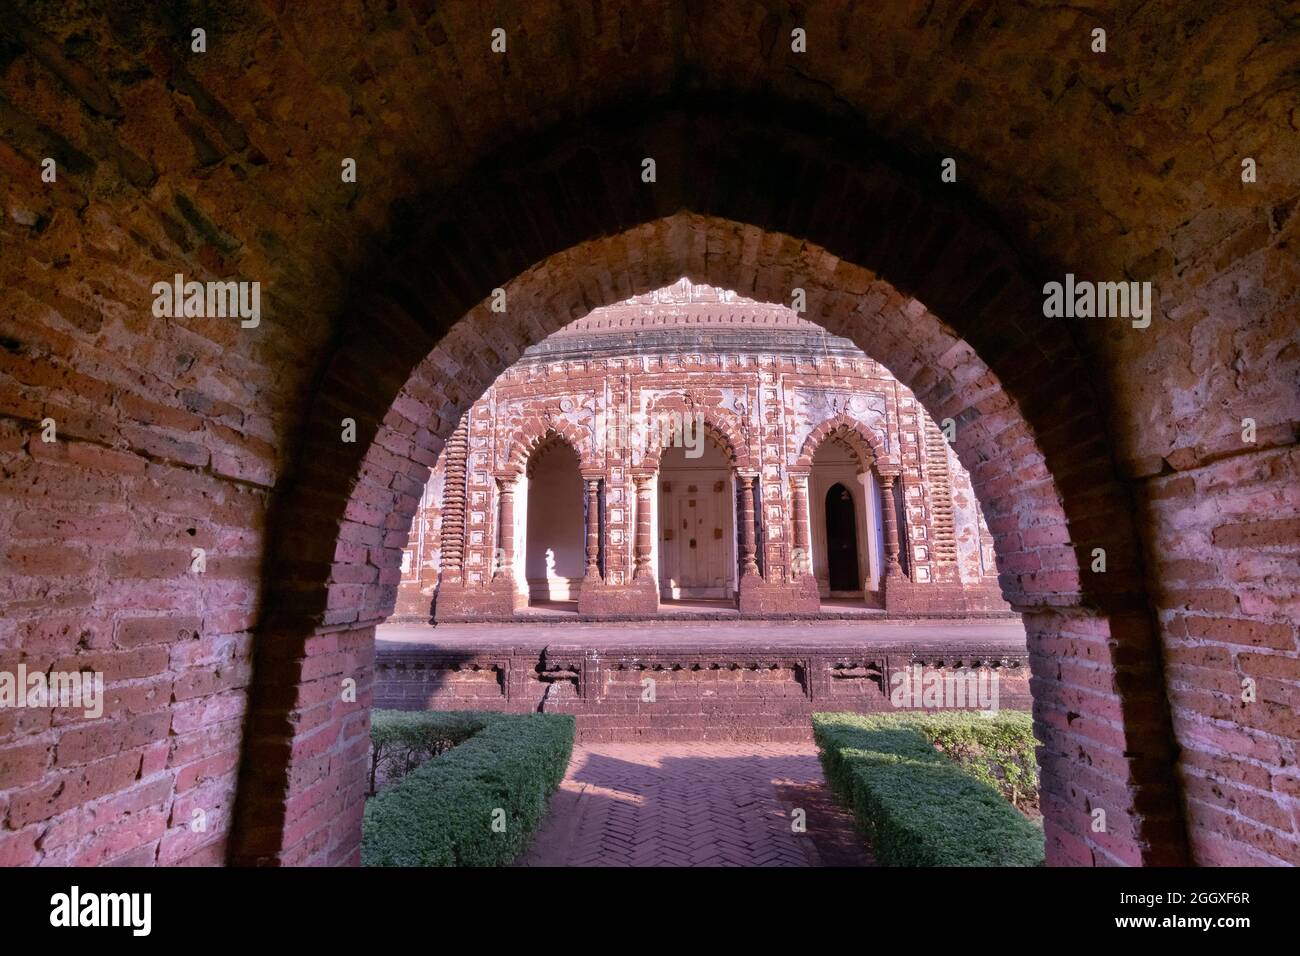 Célèbres œuvres d'art en terre cuite (argile cuite de couleur rouge brunâtre, utilisées comme matériaux de construction ornementaux) au temple de Lalji, à Bishnupur, Bengale occidental, Inde. Banque D'Images